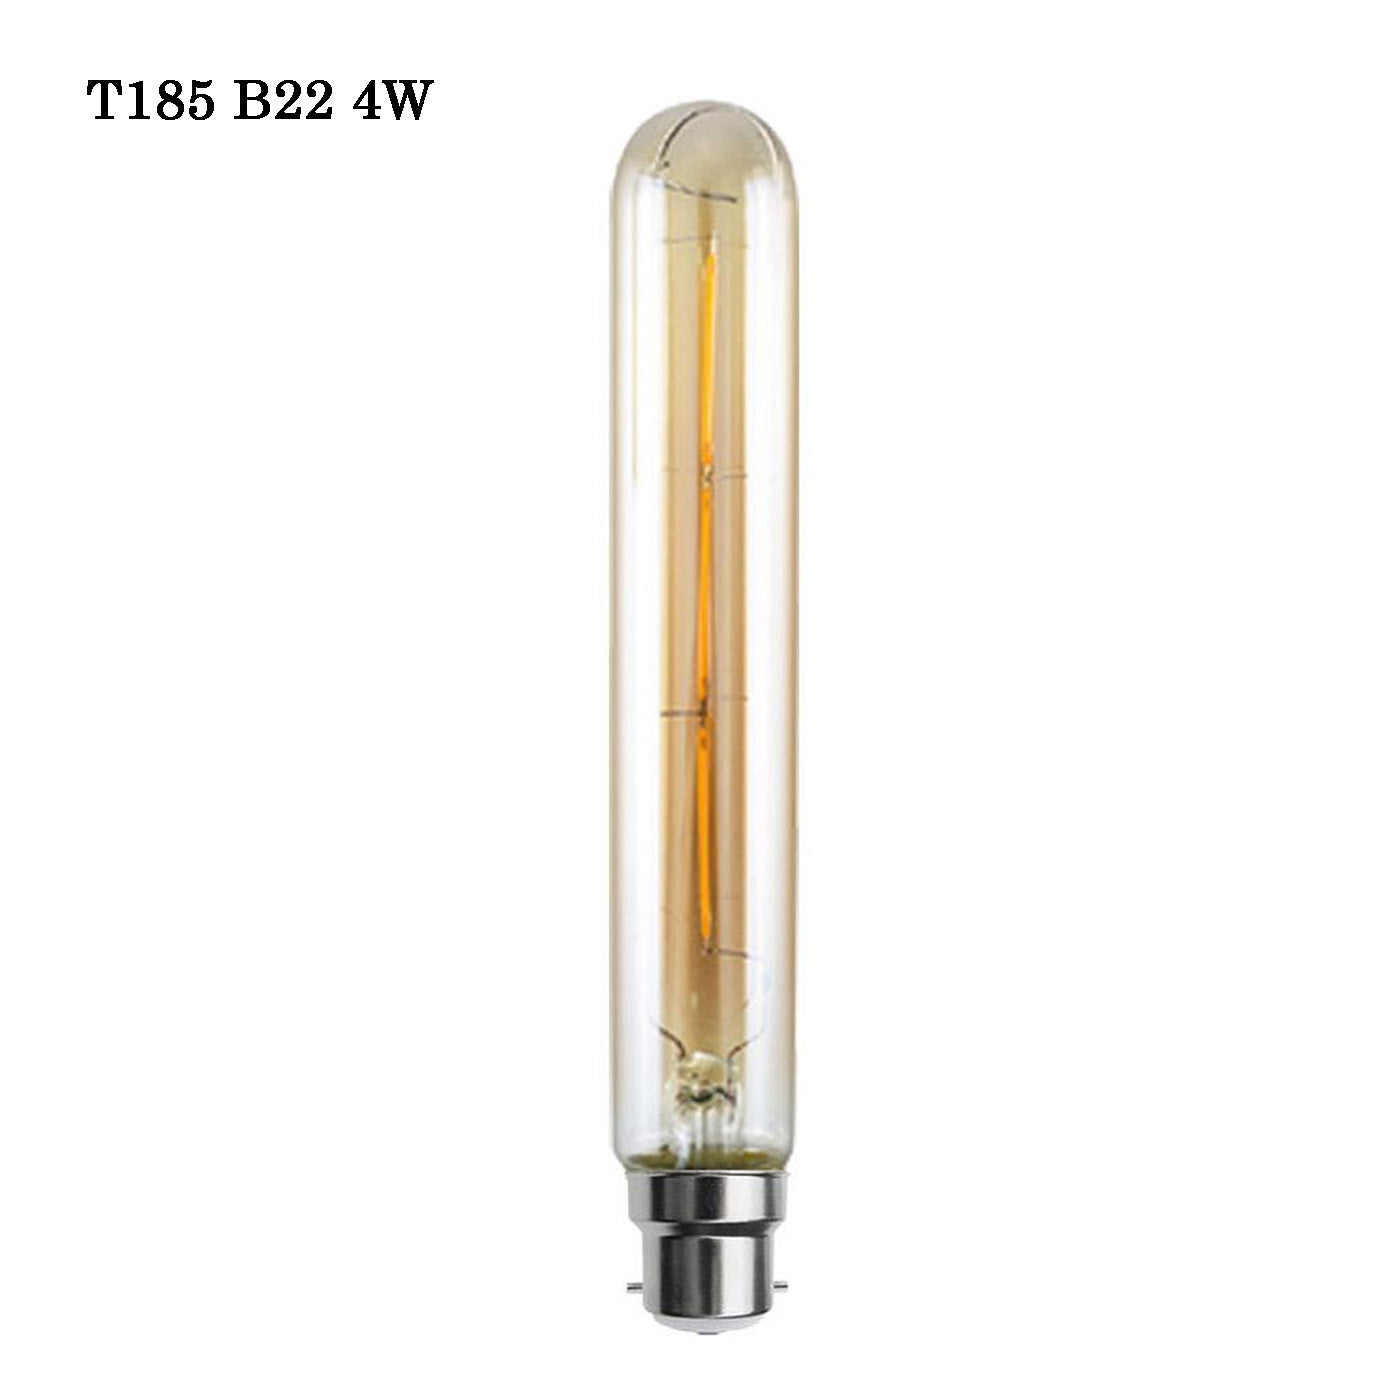 T185 B22 4w Filament light bulb